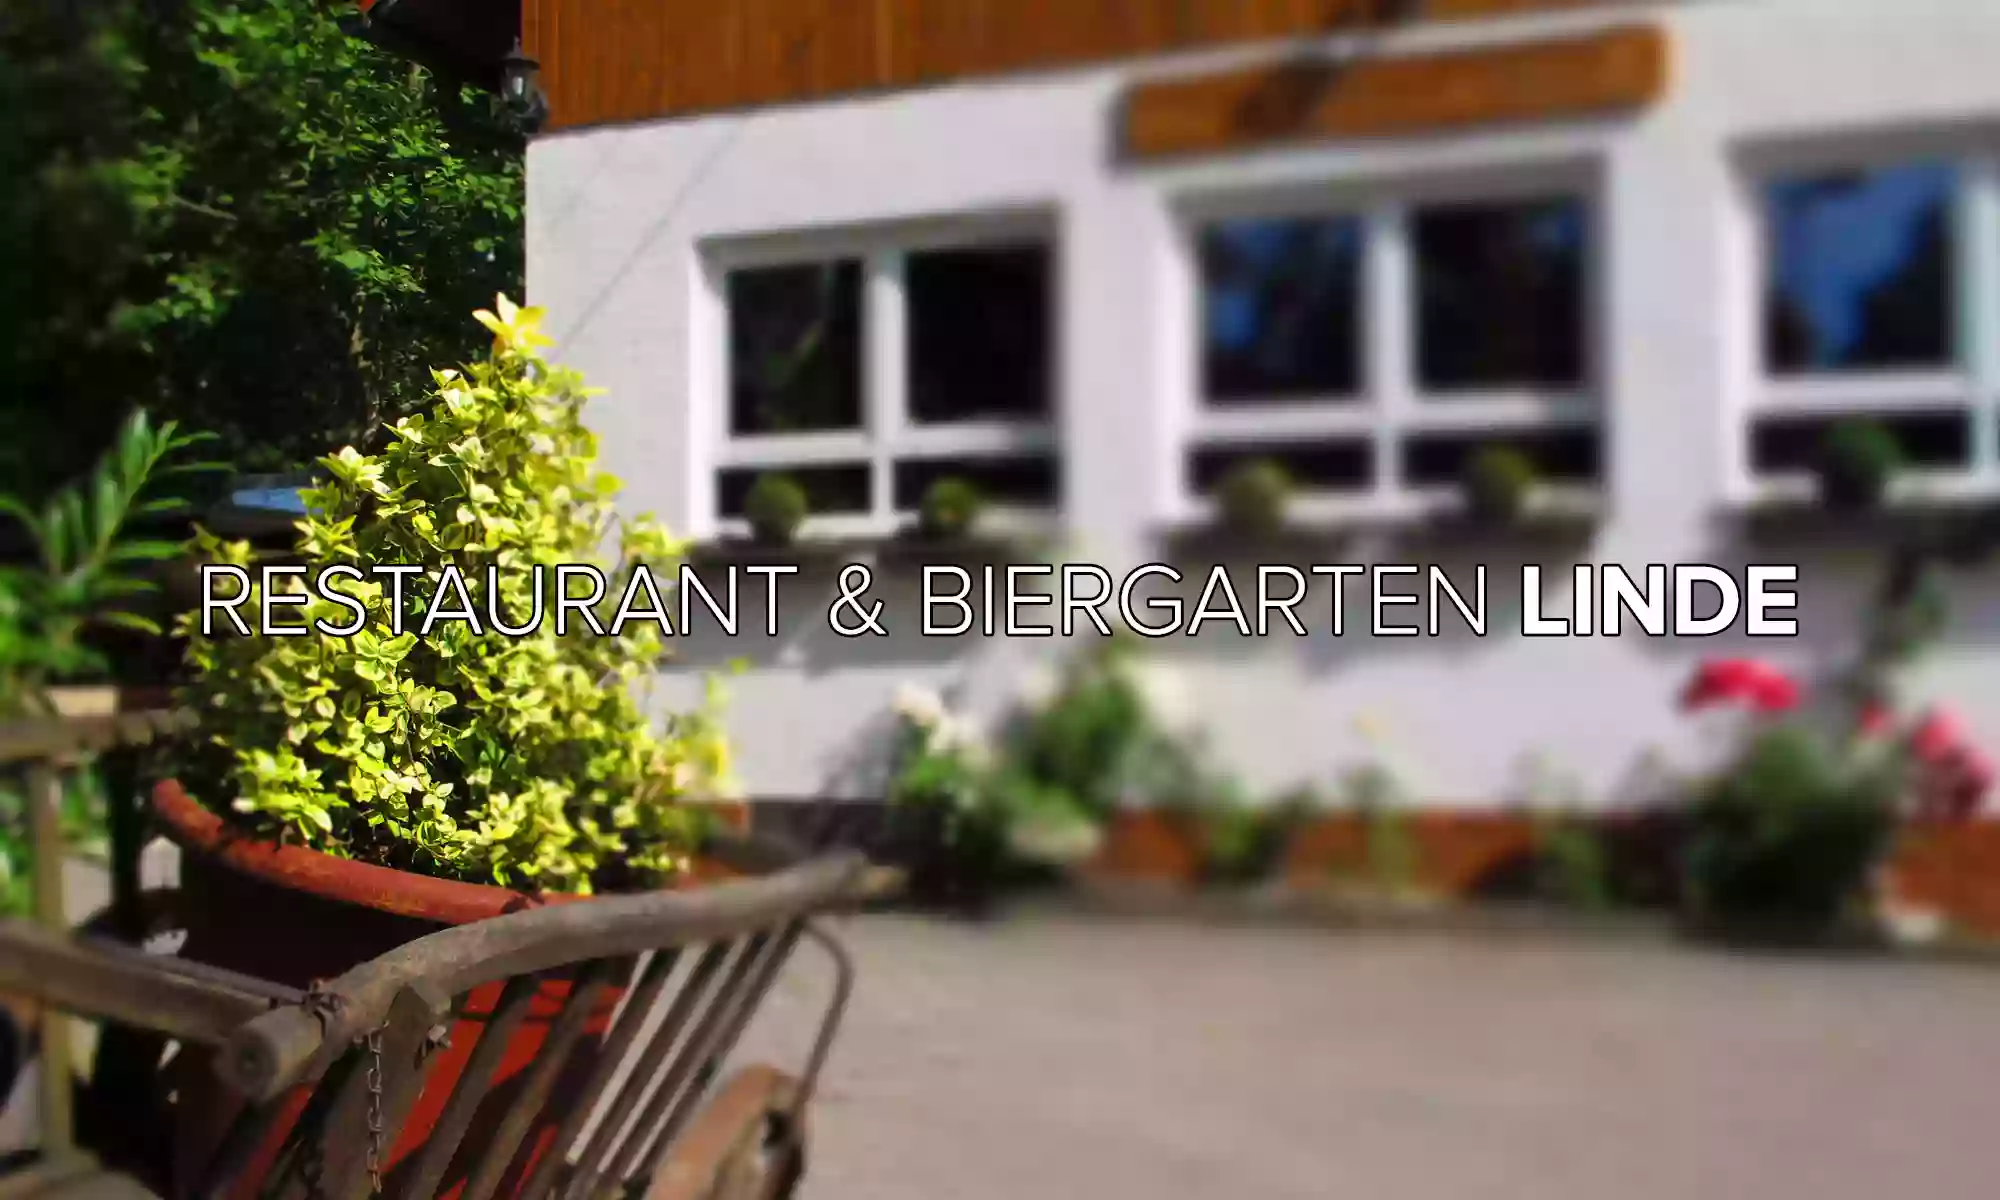 Restaurant & Biergarten "Linde"